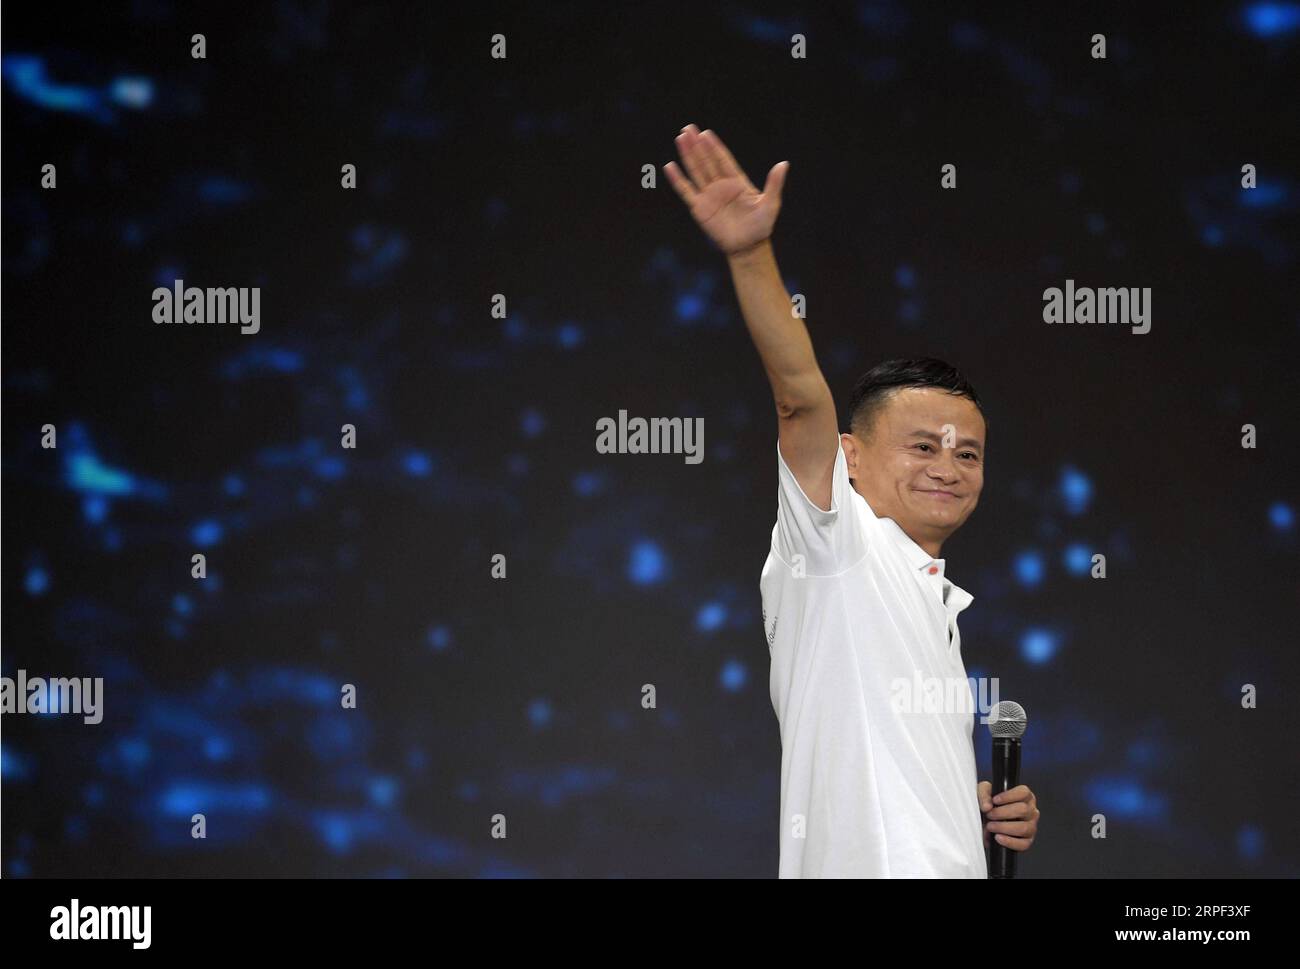 (190912) -- PEKING, 12. September 2019 -- Jack Ma Waves verabschiedet sich von einer Feier zum 20. Jahrestag der Alibaba-Gruppe in Hangzhou, Hauptstadt der ostchinesischen Provinz Zhejiang, 10. September 2019. Jack Ma trat offiziell als Group Chairman von Alibaba Tuesday zurück und übergab die Position an den CEO Daniel Zhang. Es ist ein besonderer Tag sowohl für den chinesischen Milliardär als auch für den E-Commerce-Giganten, den er mitbegründet hat. MA, eine ehemalige Englischlehrerin, wird am Dienstag 55, was auch den 20. Jahrestag der Alibaba Group und den Tag der Lehrer markierte. MA übergab 2013 die Position des CEO Stockfoto